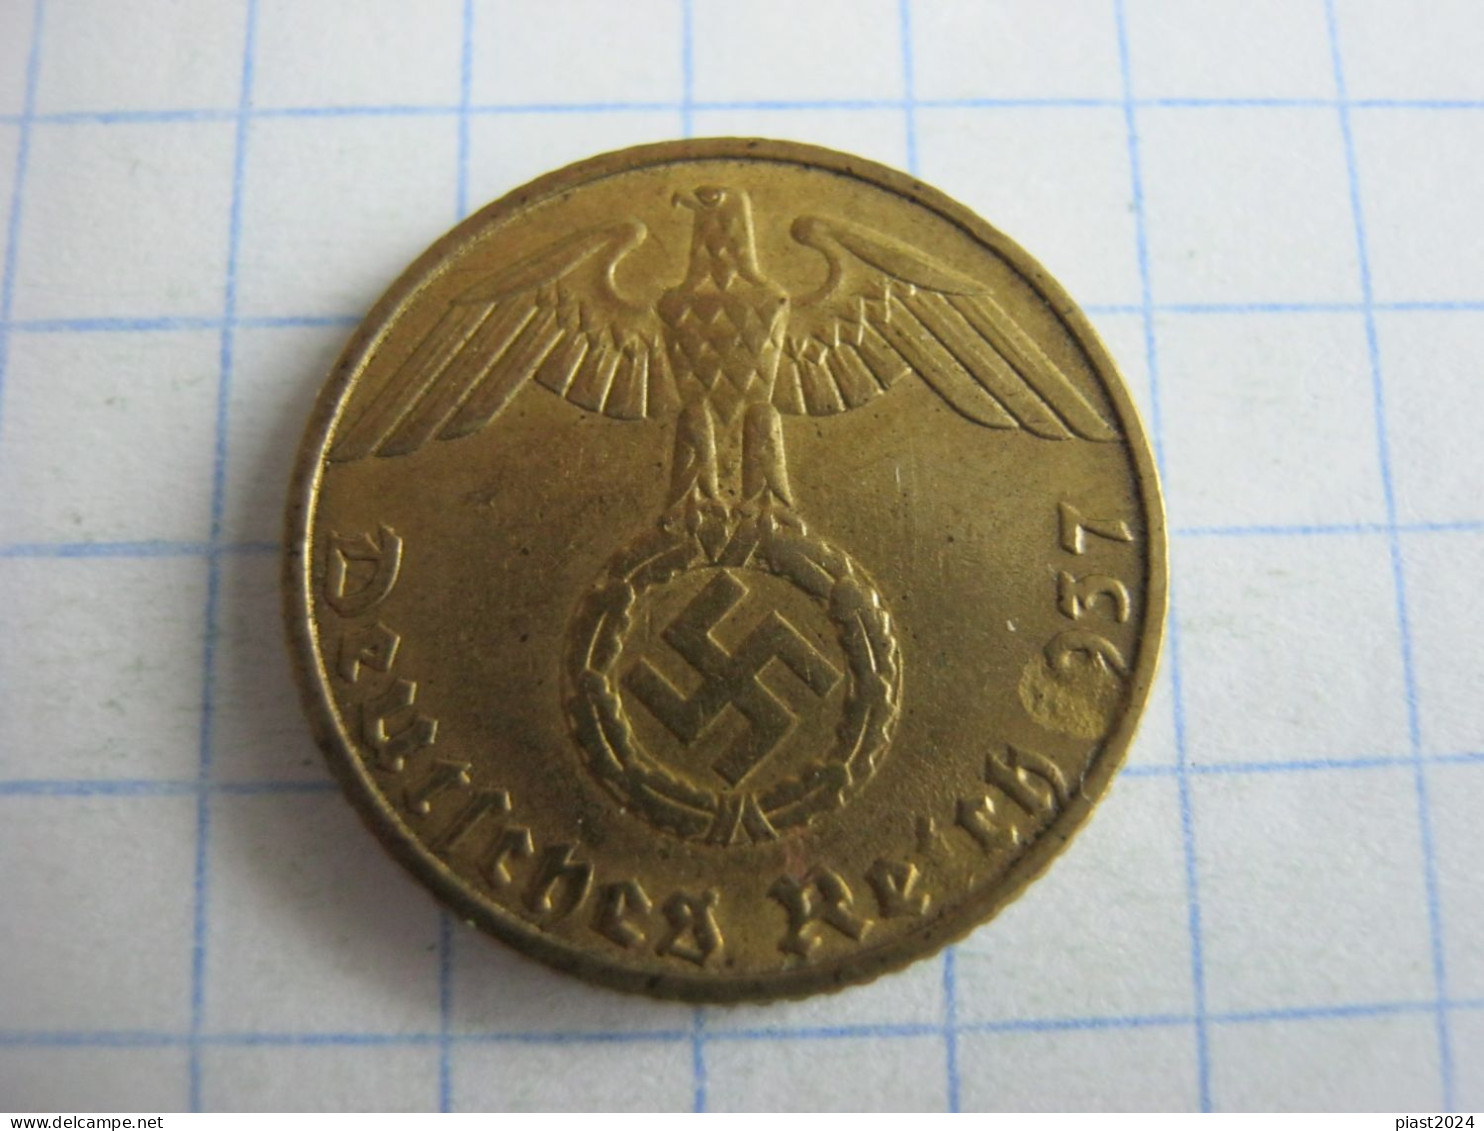 Germany 5 Reichspfennig 1937 E - 5 Reichspfennig